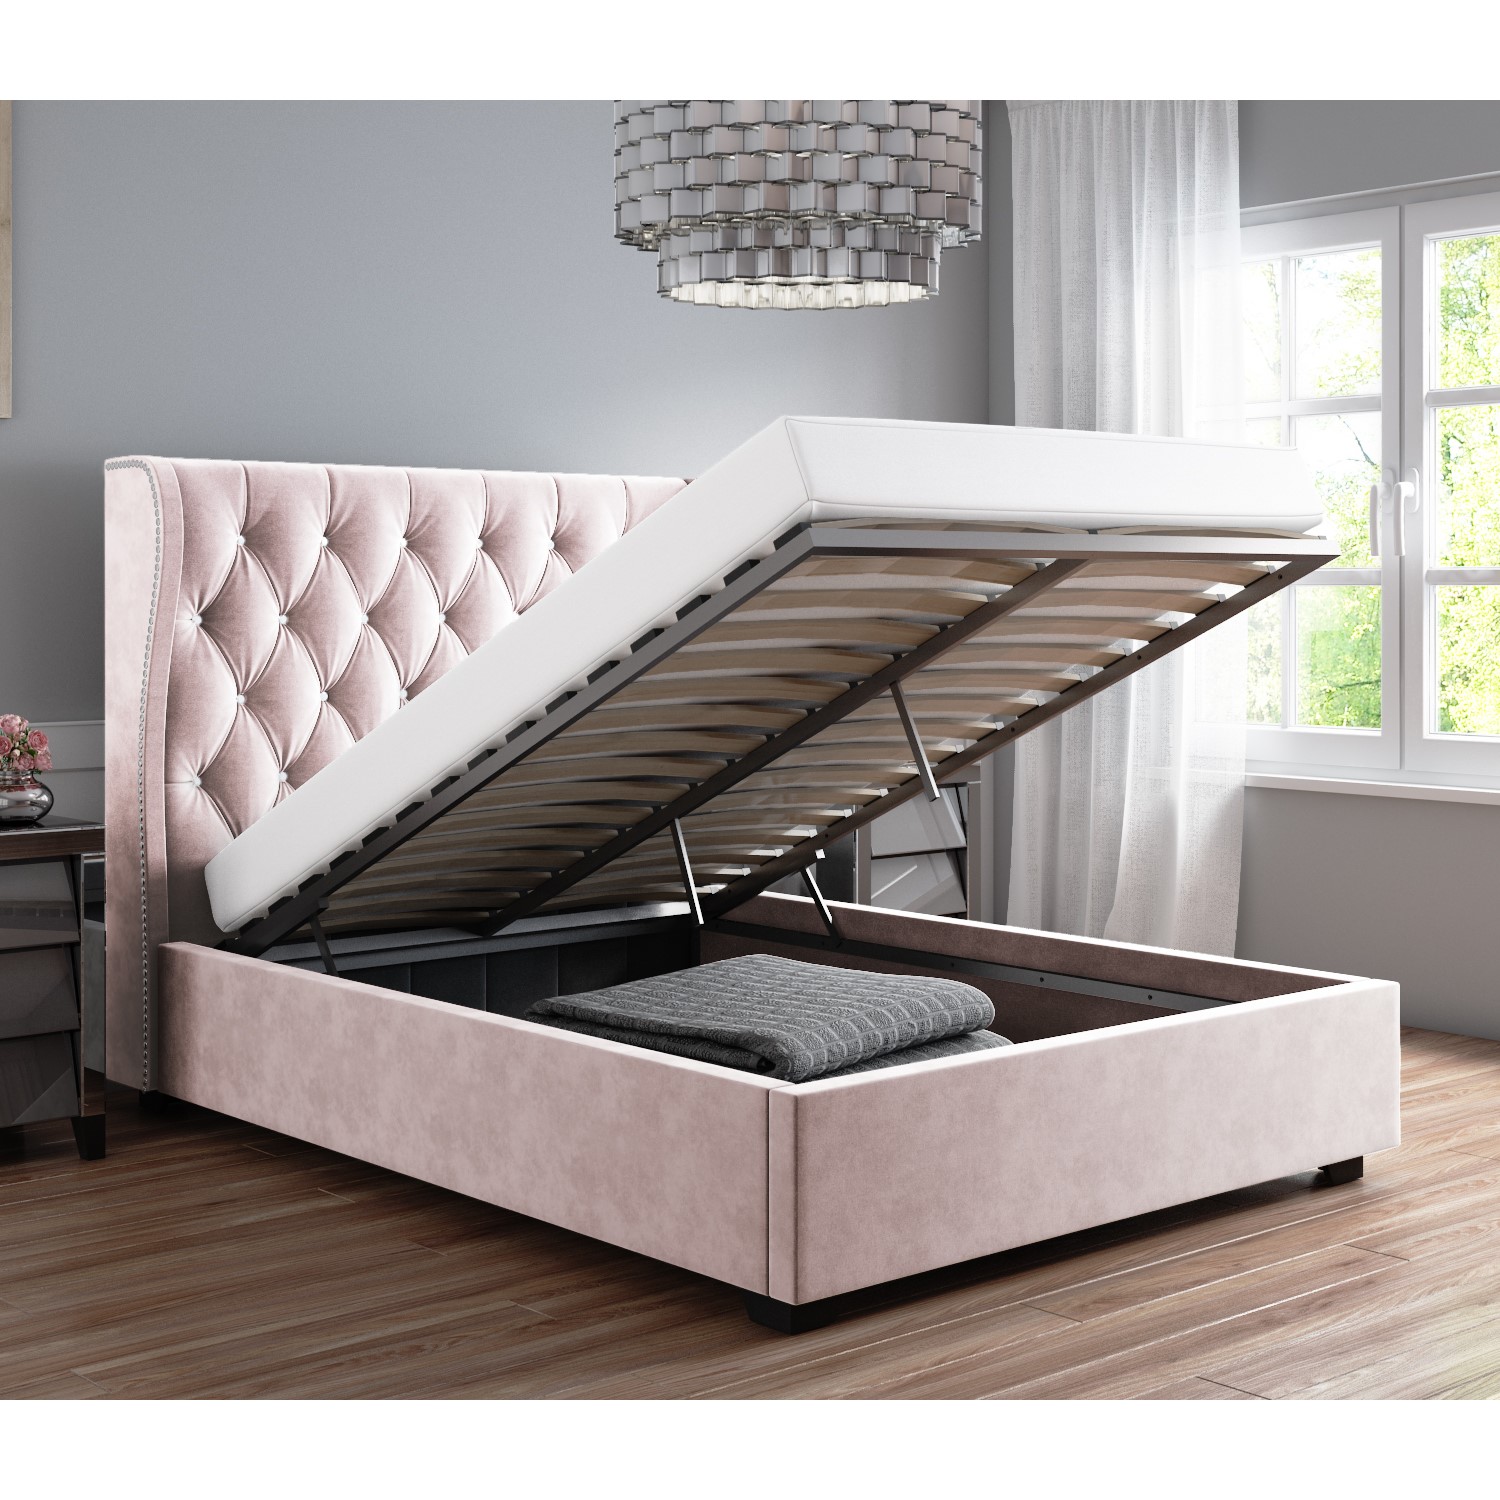 Safina Blush Pink Velvet Double Ottoman, Light Pink Bed Frame